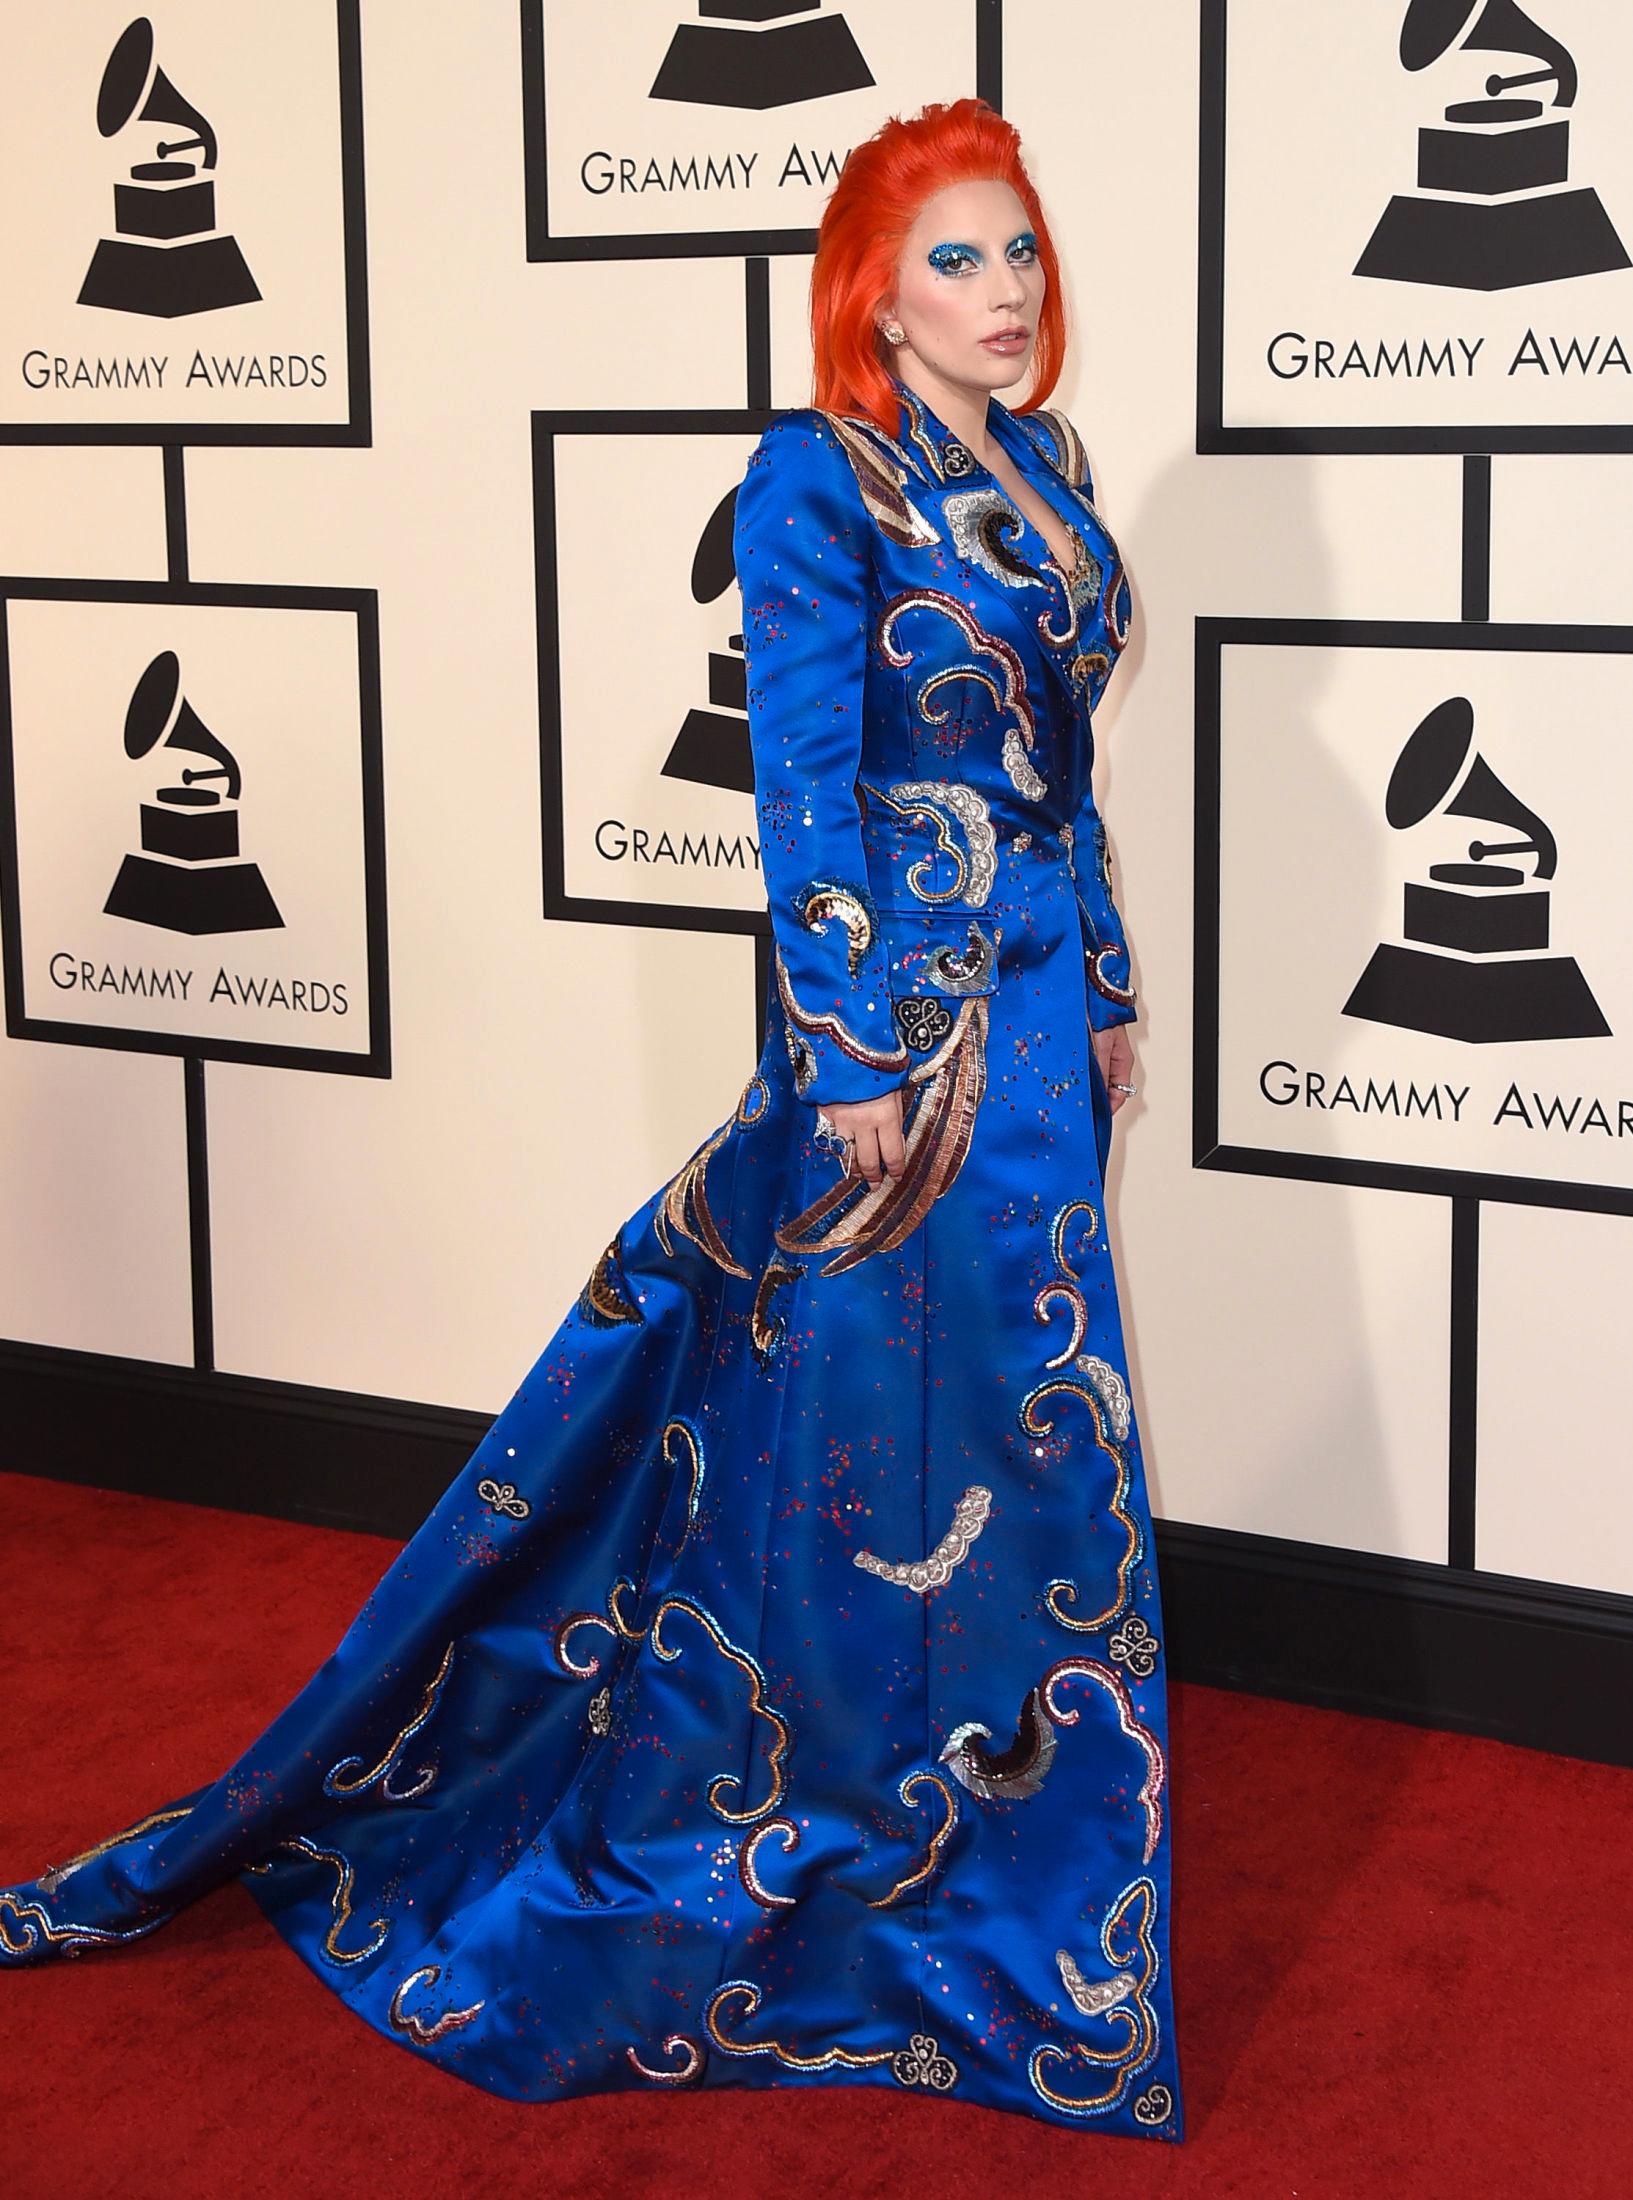 FARGER HÅRET: Lady Gaga dukket opp på Grammy-utdelingen i 2016 med knall oransje hår. Foto: AP